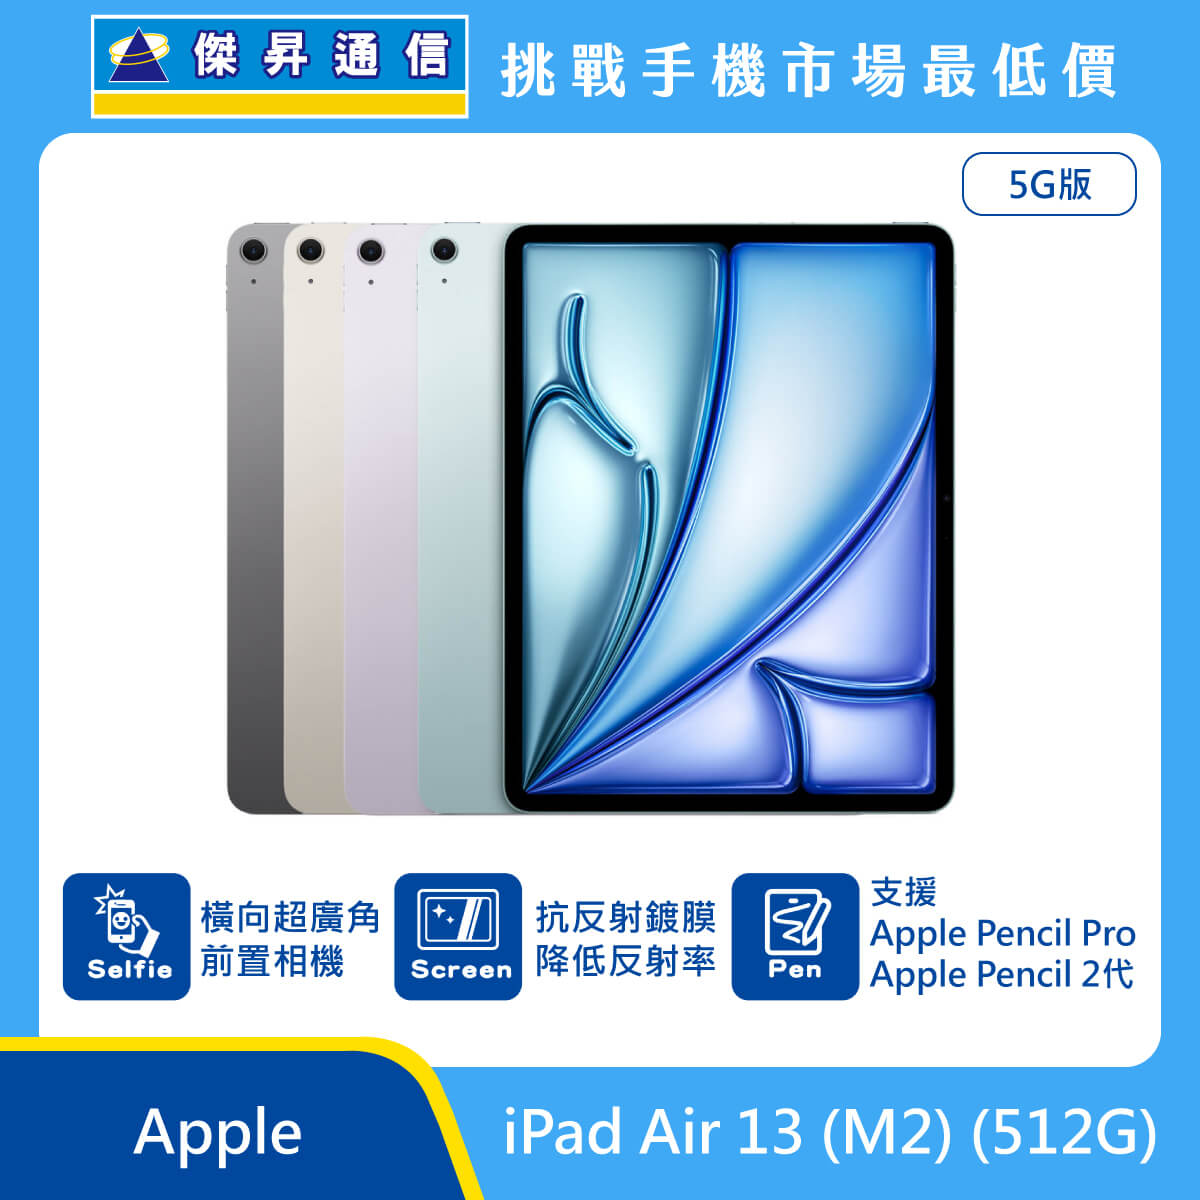 Apple 平板 iPad Air 13 M2 (512G) 即將上市